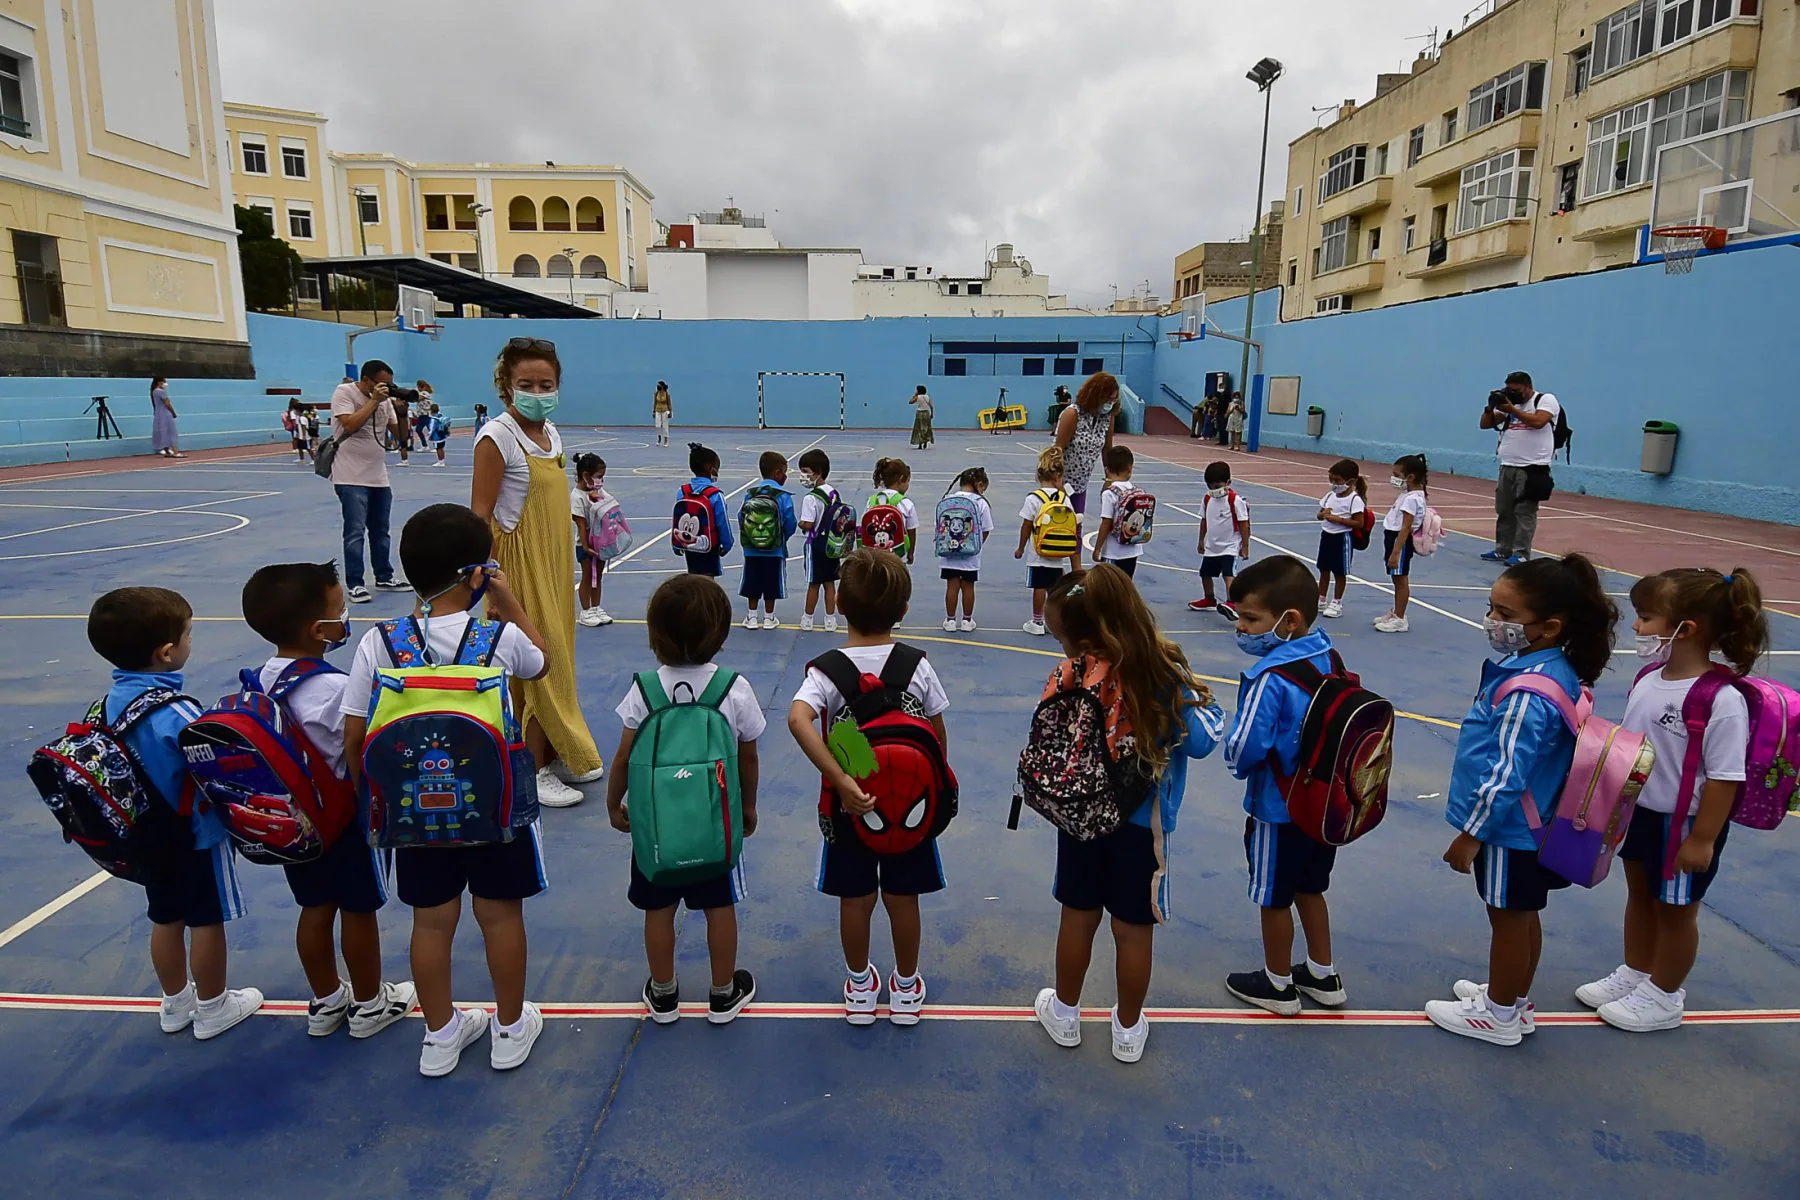 Foto de archivo de ecolares del segundi ciclo de Infantil en un colegio de la capital grancanaria. / JUAN CARLOS ALONSO